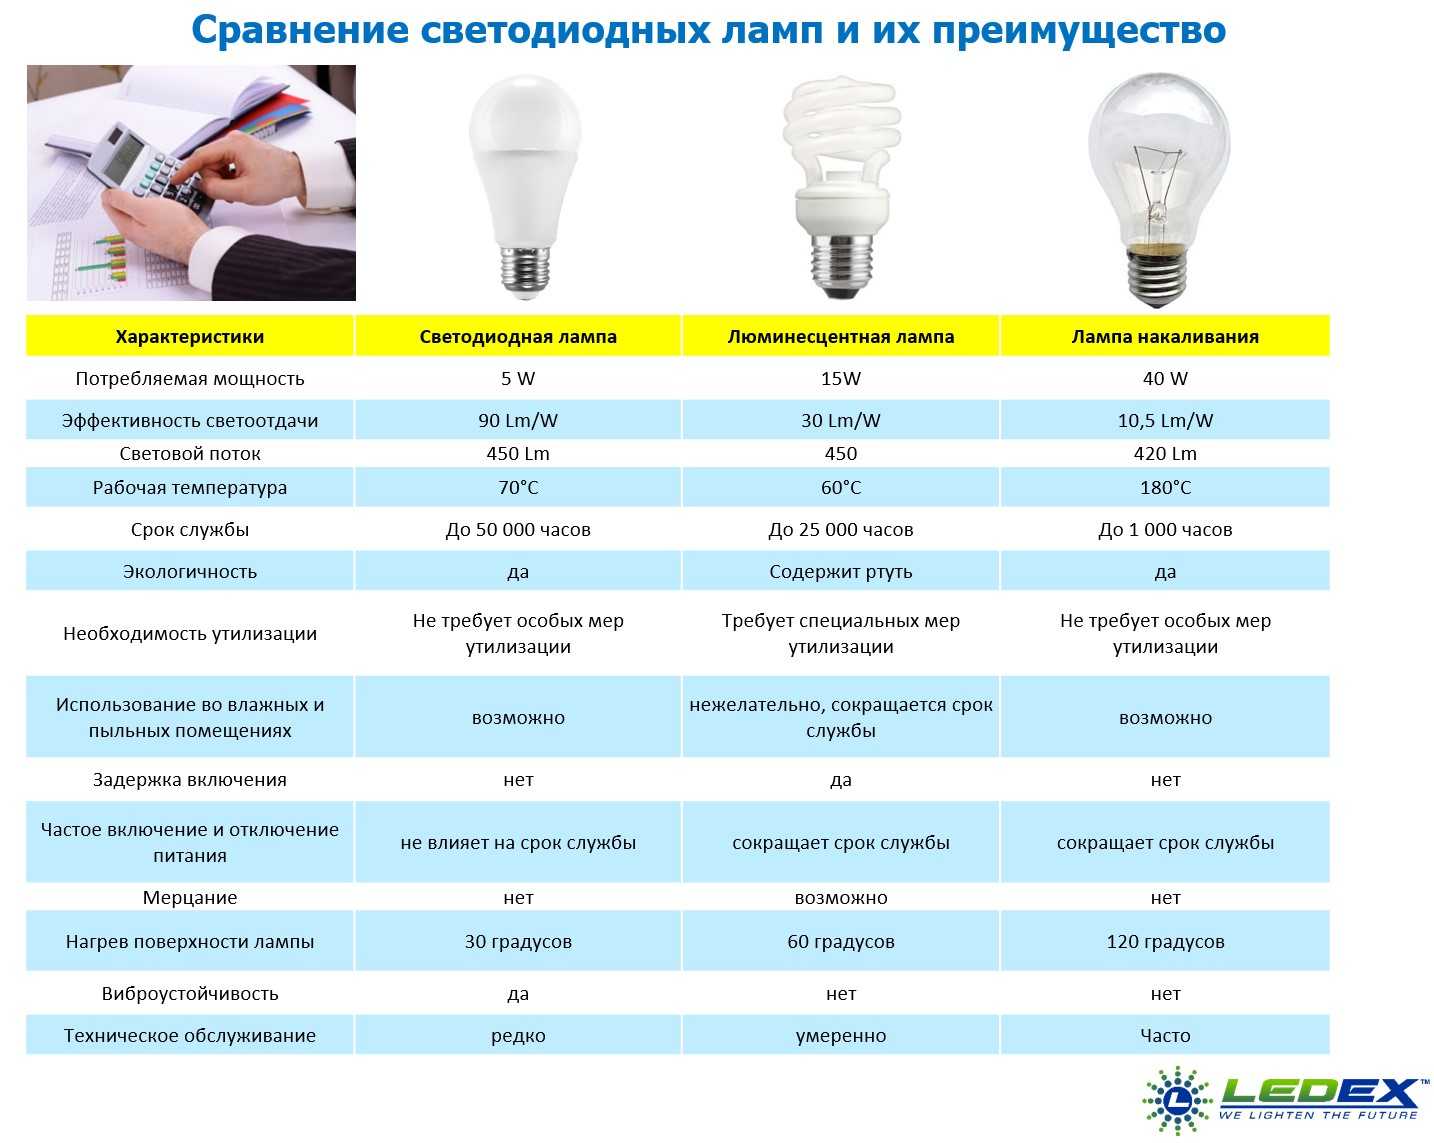 Лампа днат: технические характеристики, натриевая, расшифровка, срок службы